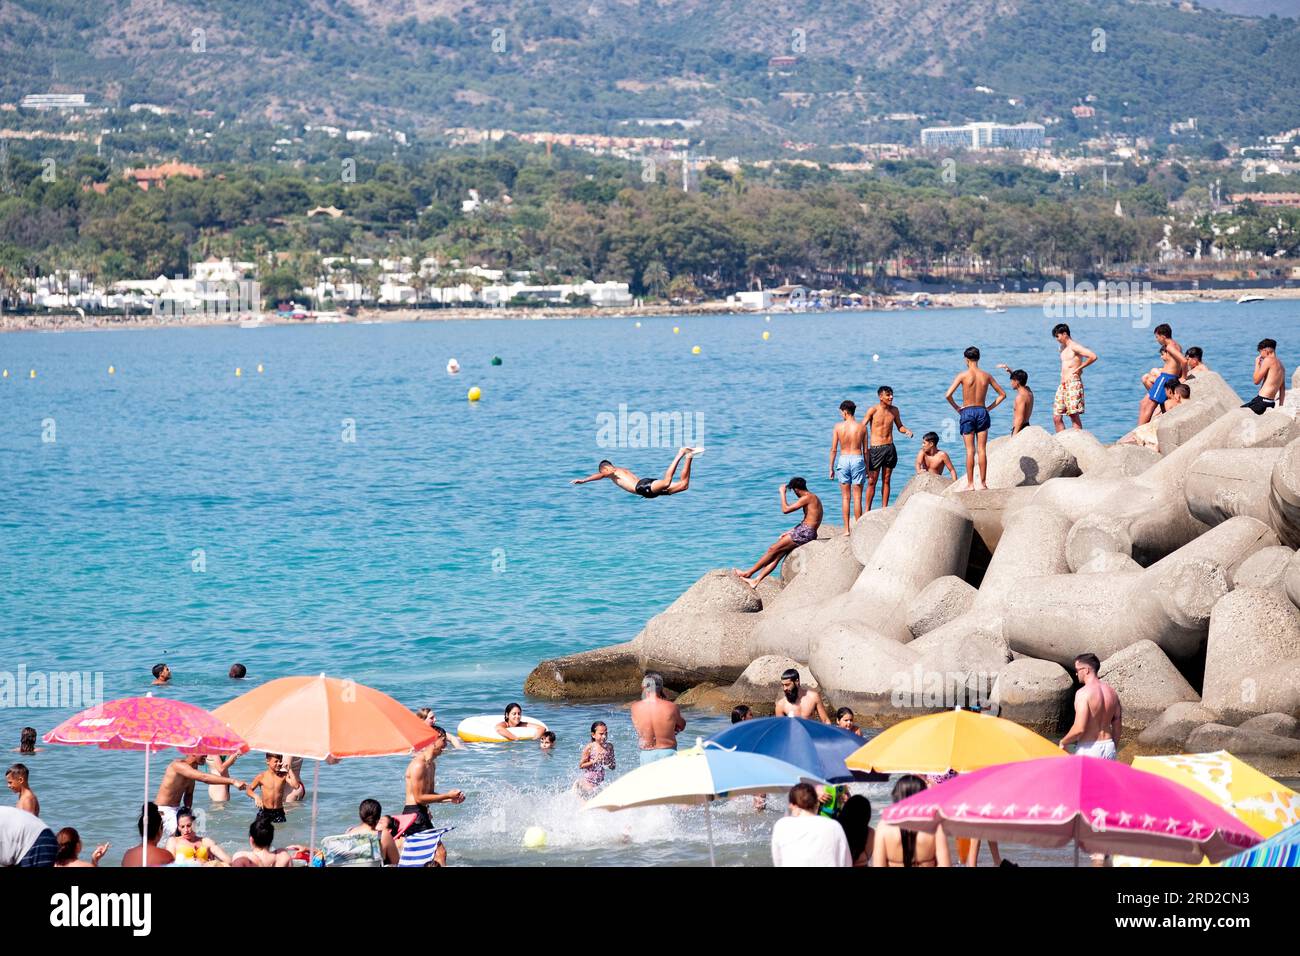 Un giovane si tuffa in mare dalle rocce vicine per rinfrescarsi in una calda giornata estiva. Altri si mettono in fila per seguirlo in mare. Marbella, Spagna Foto Stock